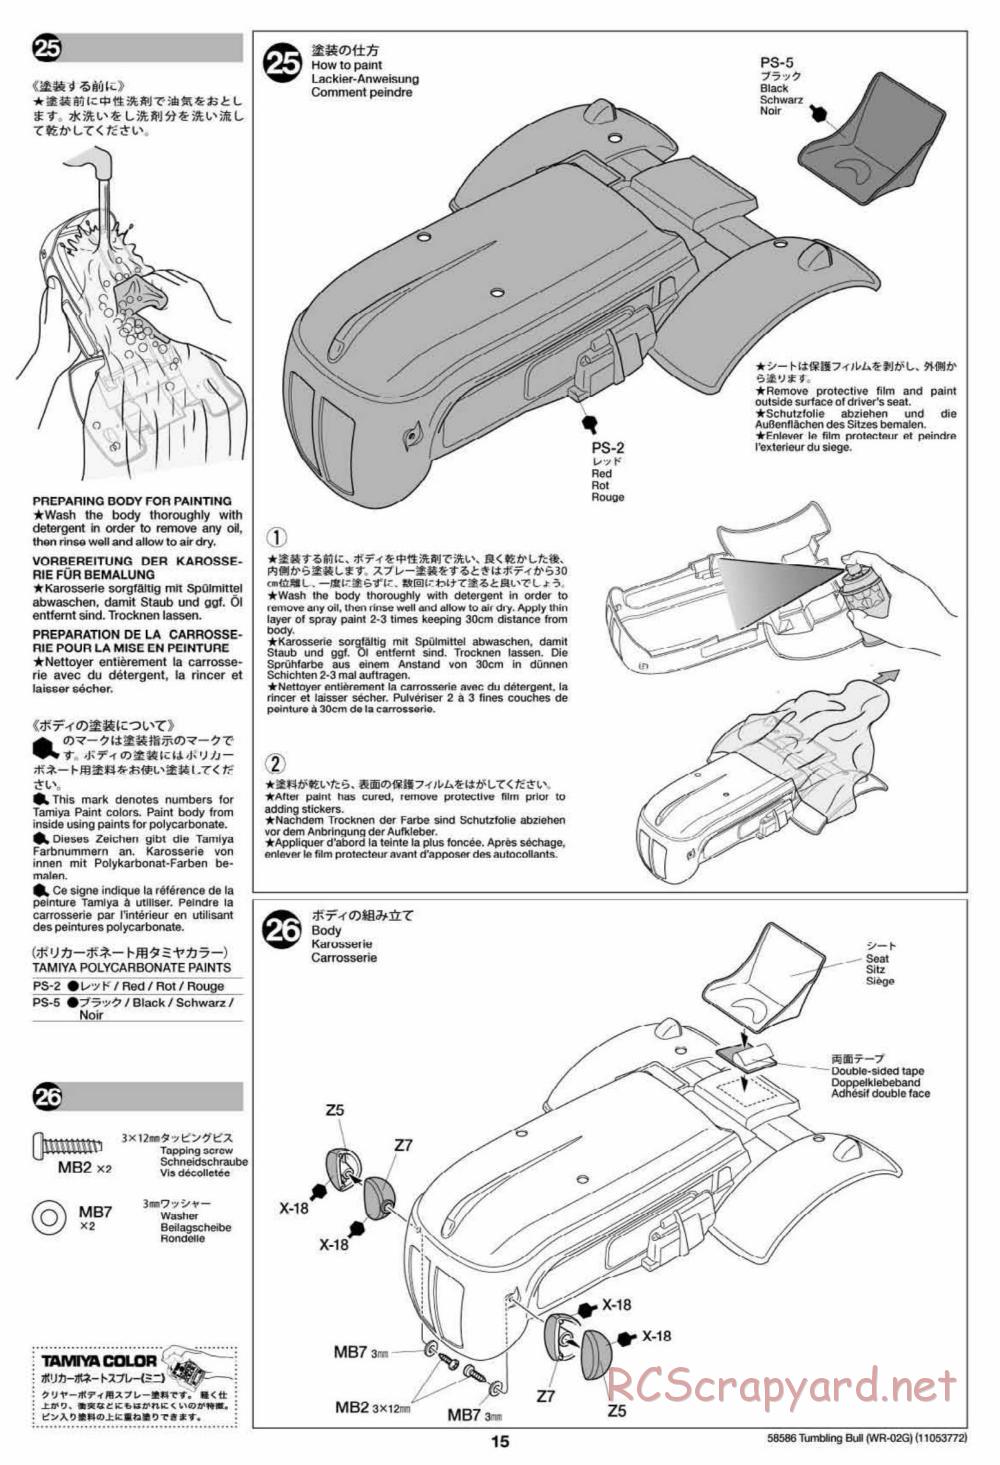 Tamiya - Tumbling Bull Chassis - Manual - Page 15